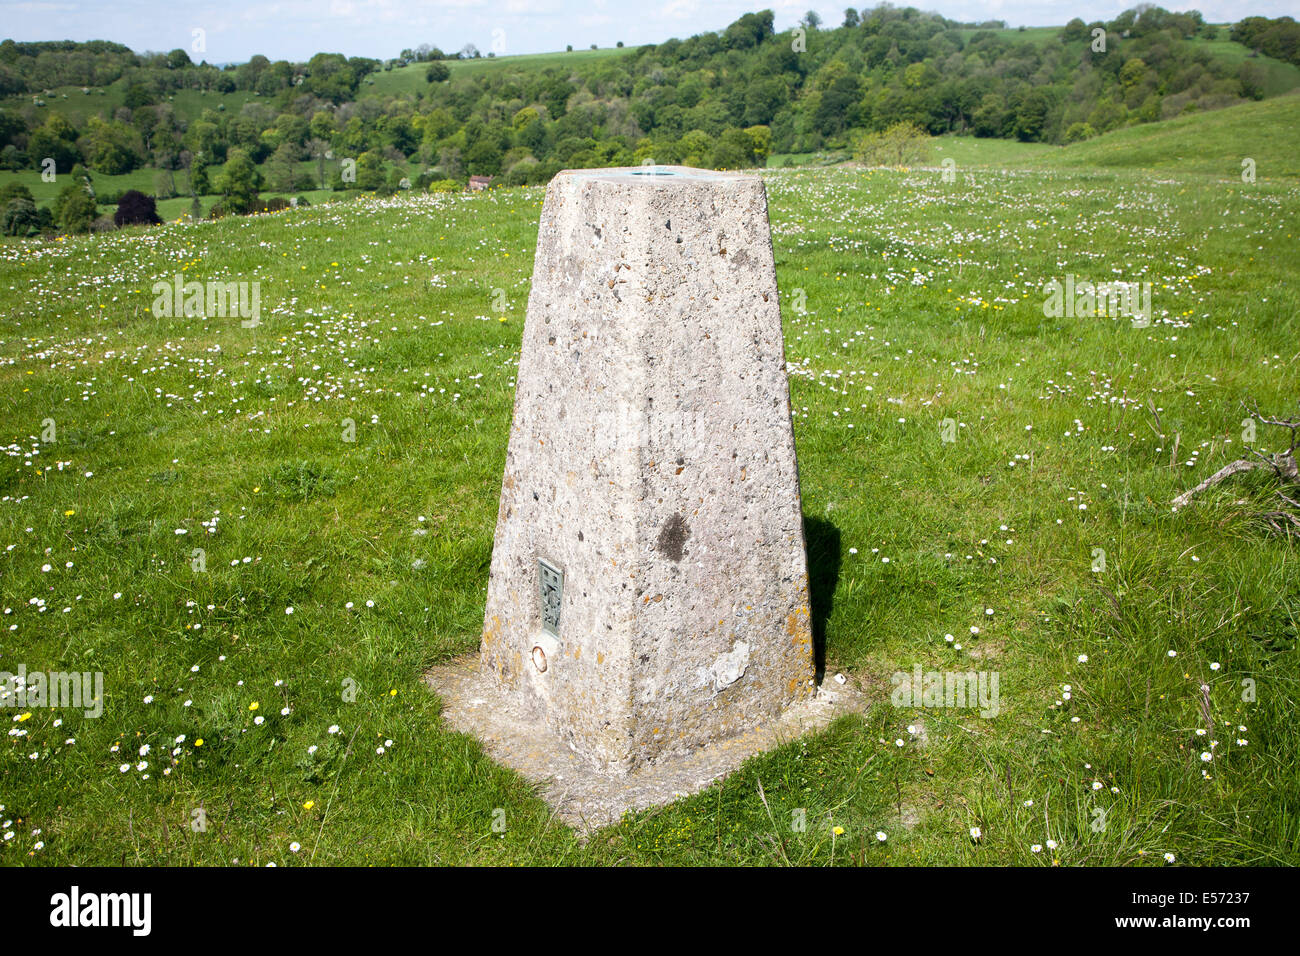 La triangulation de béton sur pied d'une colline de craie la tombe de Géant, près de Oare, Wiltshire, Angleterre Banque D'Images